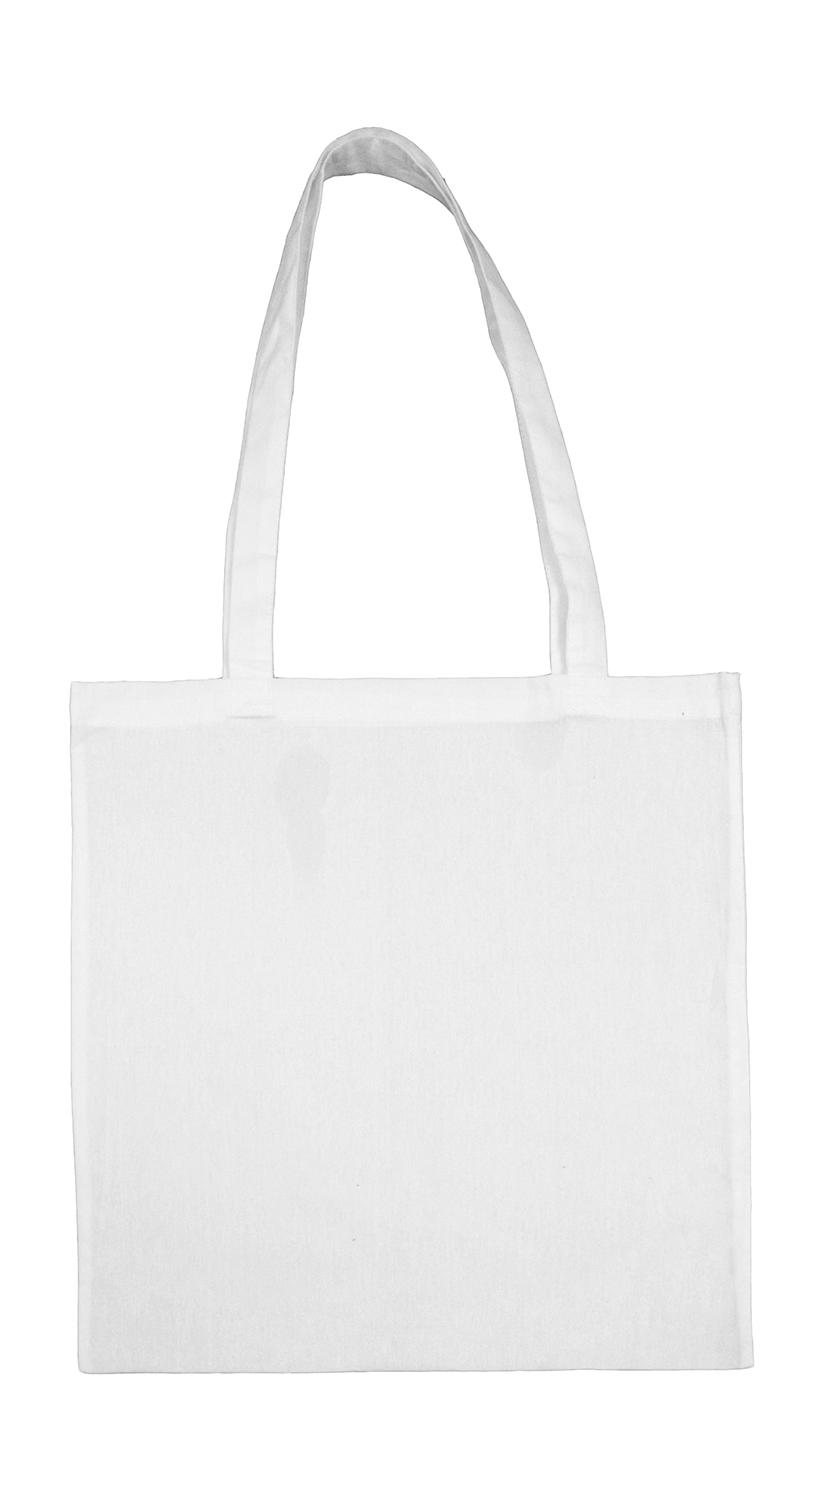  Cotton Bag LH in Farbe Snowwhite